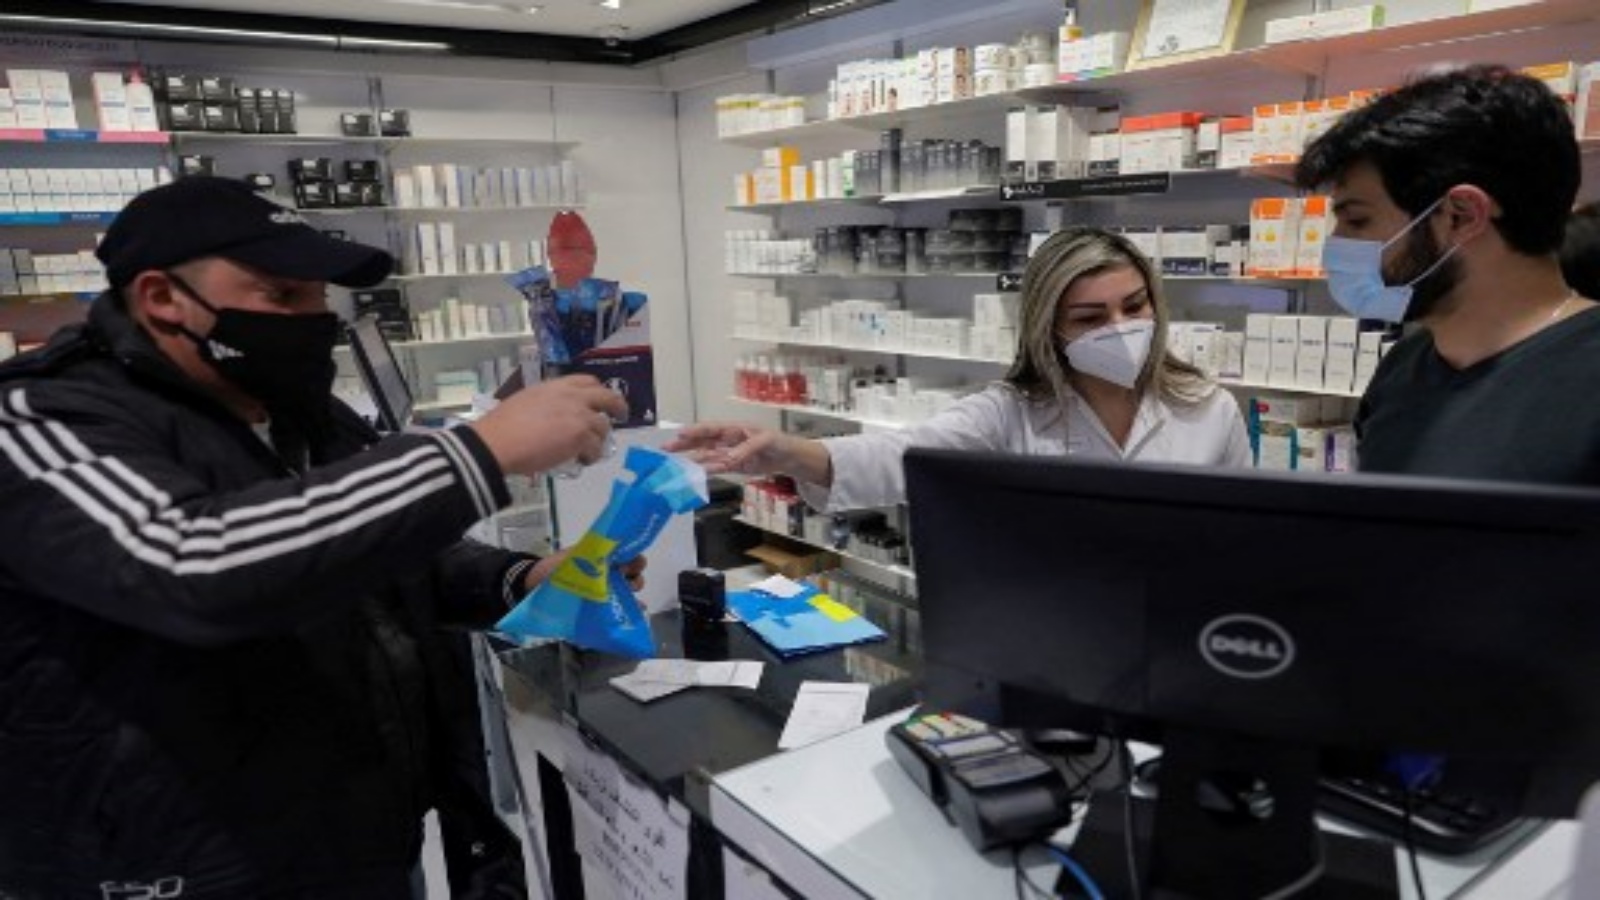 لبناني يشتري الأدوية من صيدلية في العاصمة اللبنانية بيروت ، في 2 فبراير 2021. مع تدهور الاقتصاد وانتشار جائحة COVID-19 ، اجتاح الشراء بدافع الذعر الصيدليات اللبنانية ، مما تسبب في نقص وازدهار السوق السوداء.